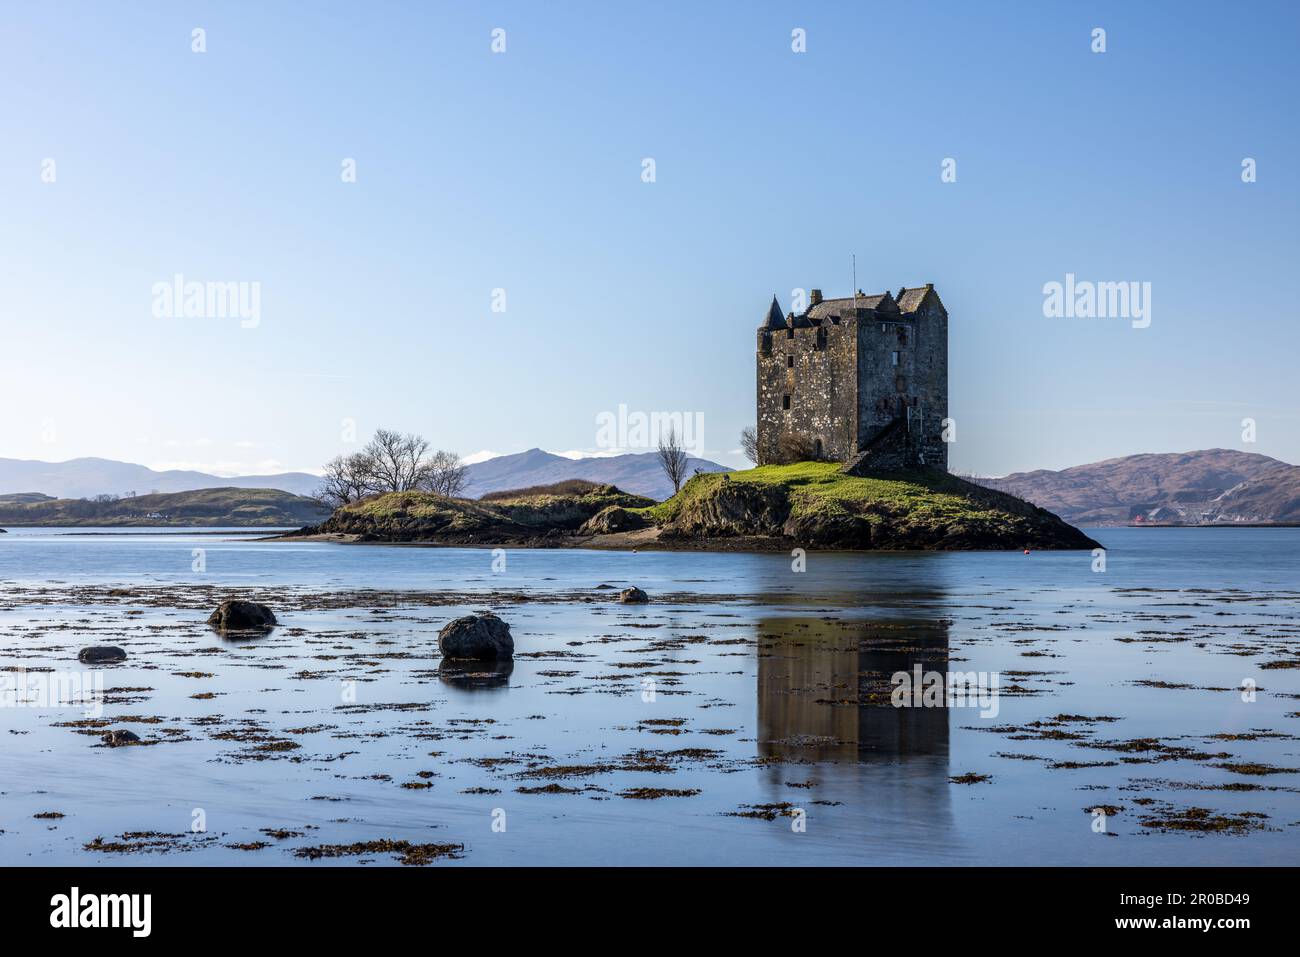 Bild aufgenommen während eines privaten Workshops, der von Edinburgh Photography Workshop im Castle Stalker Jetty (privat), A828, Achosrigan, Appin, Argyll durchgeführt wird Stockfoto